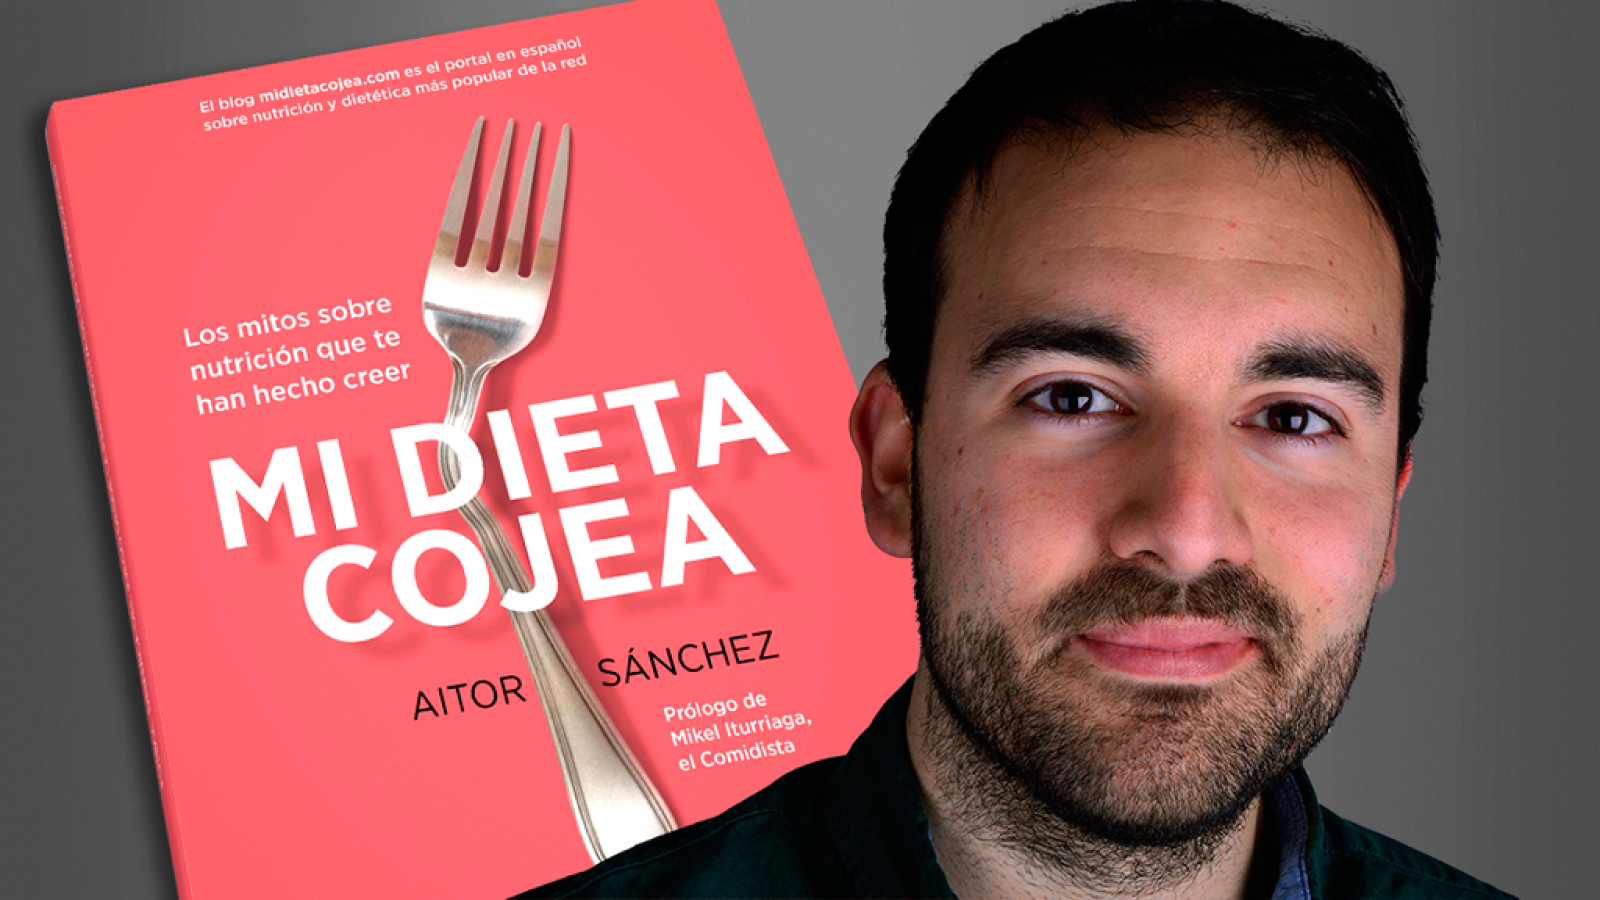 Concurso: ¿Quieres un ejemplar del libro 'Mi dieta cojea'?